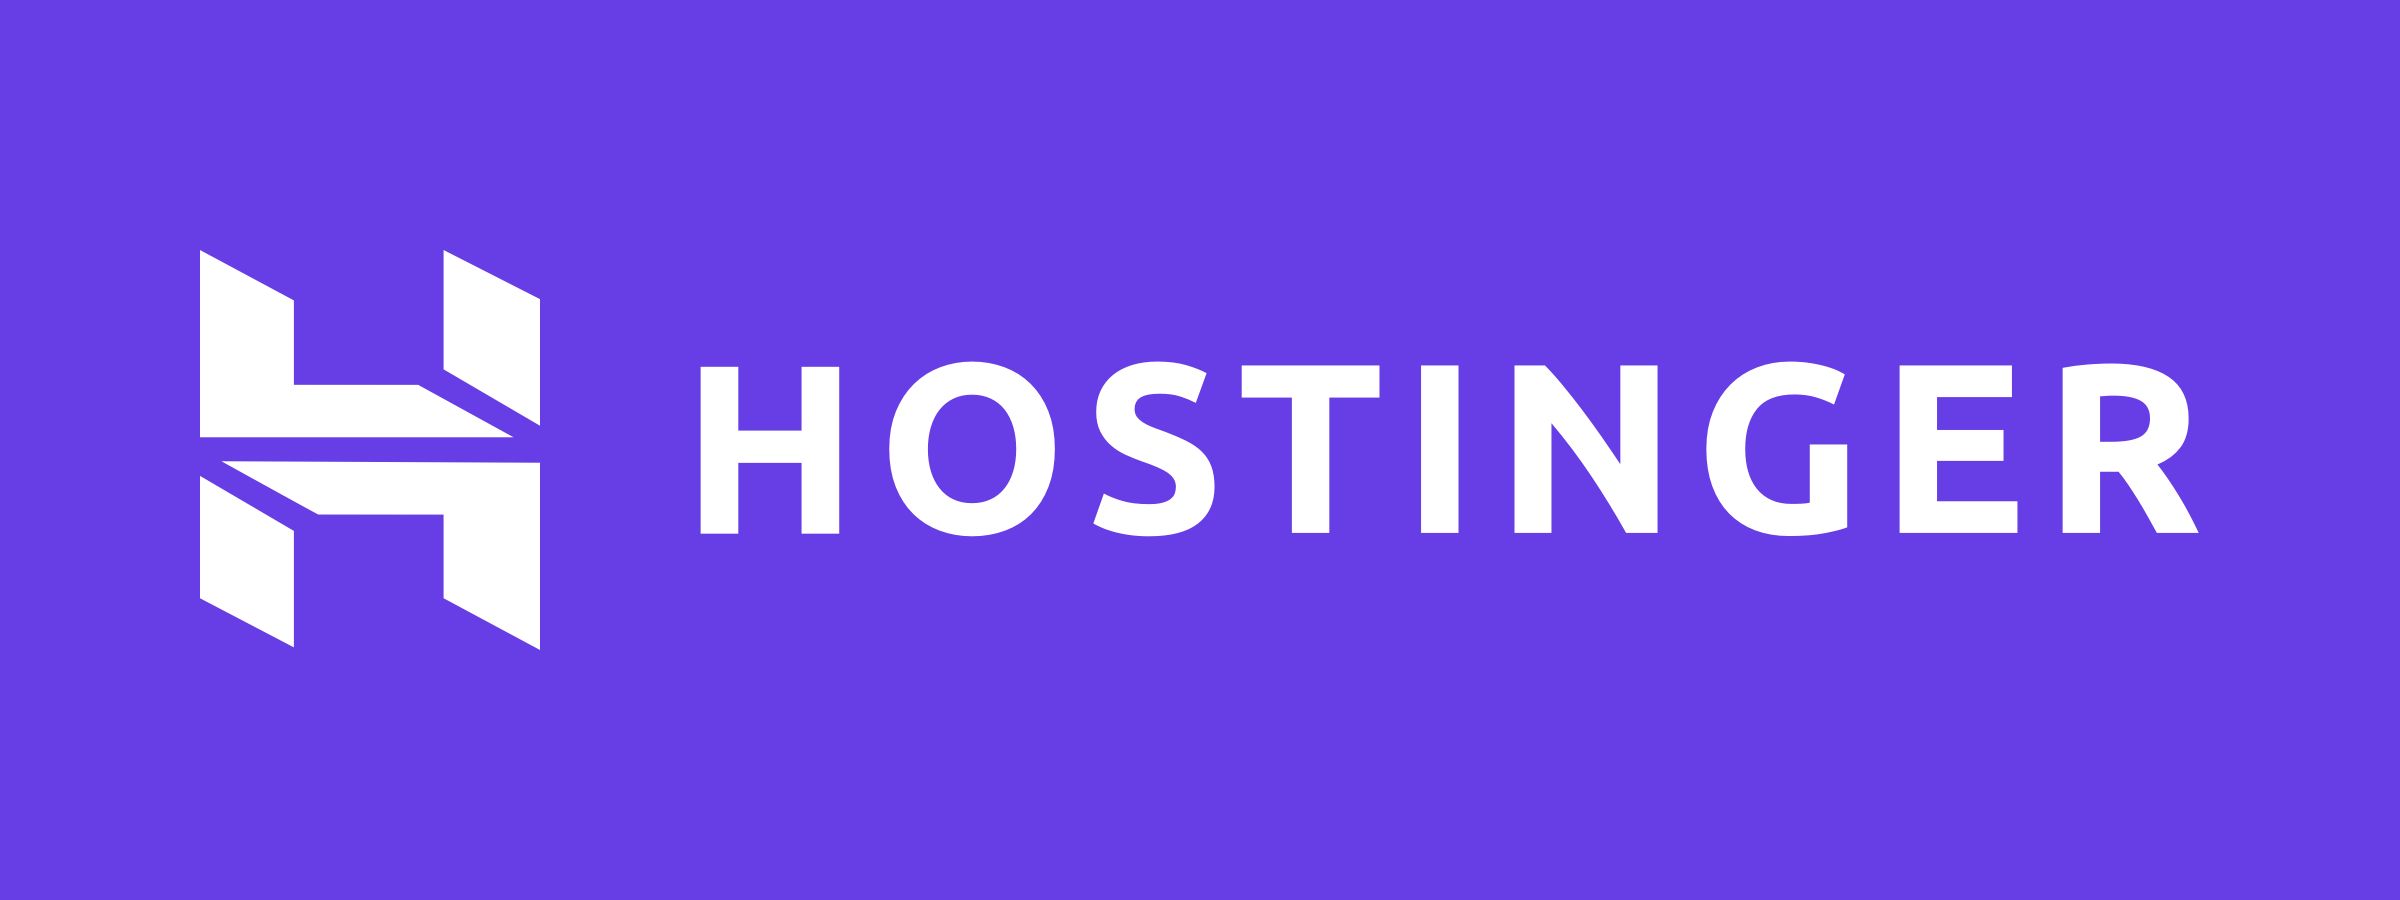 Hostinger Free Domain